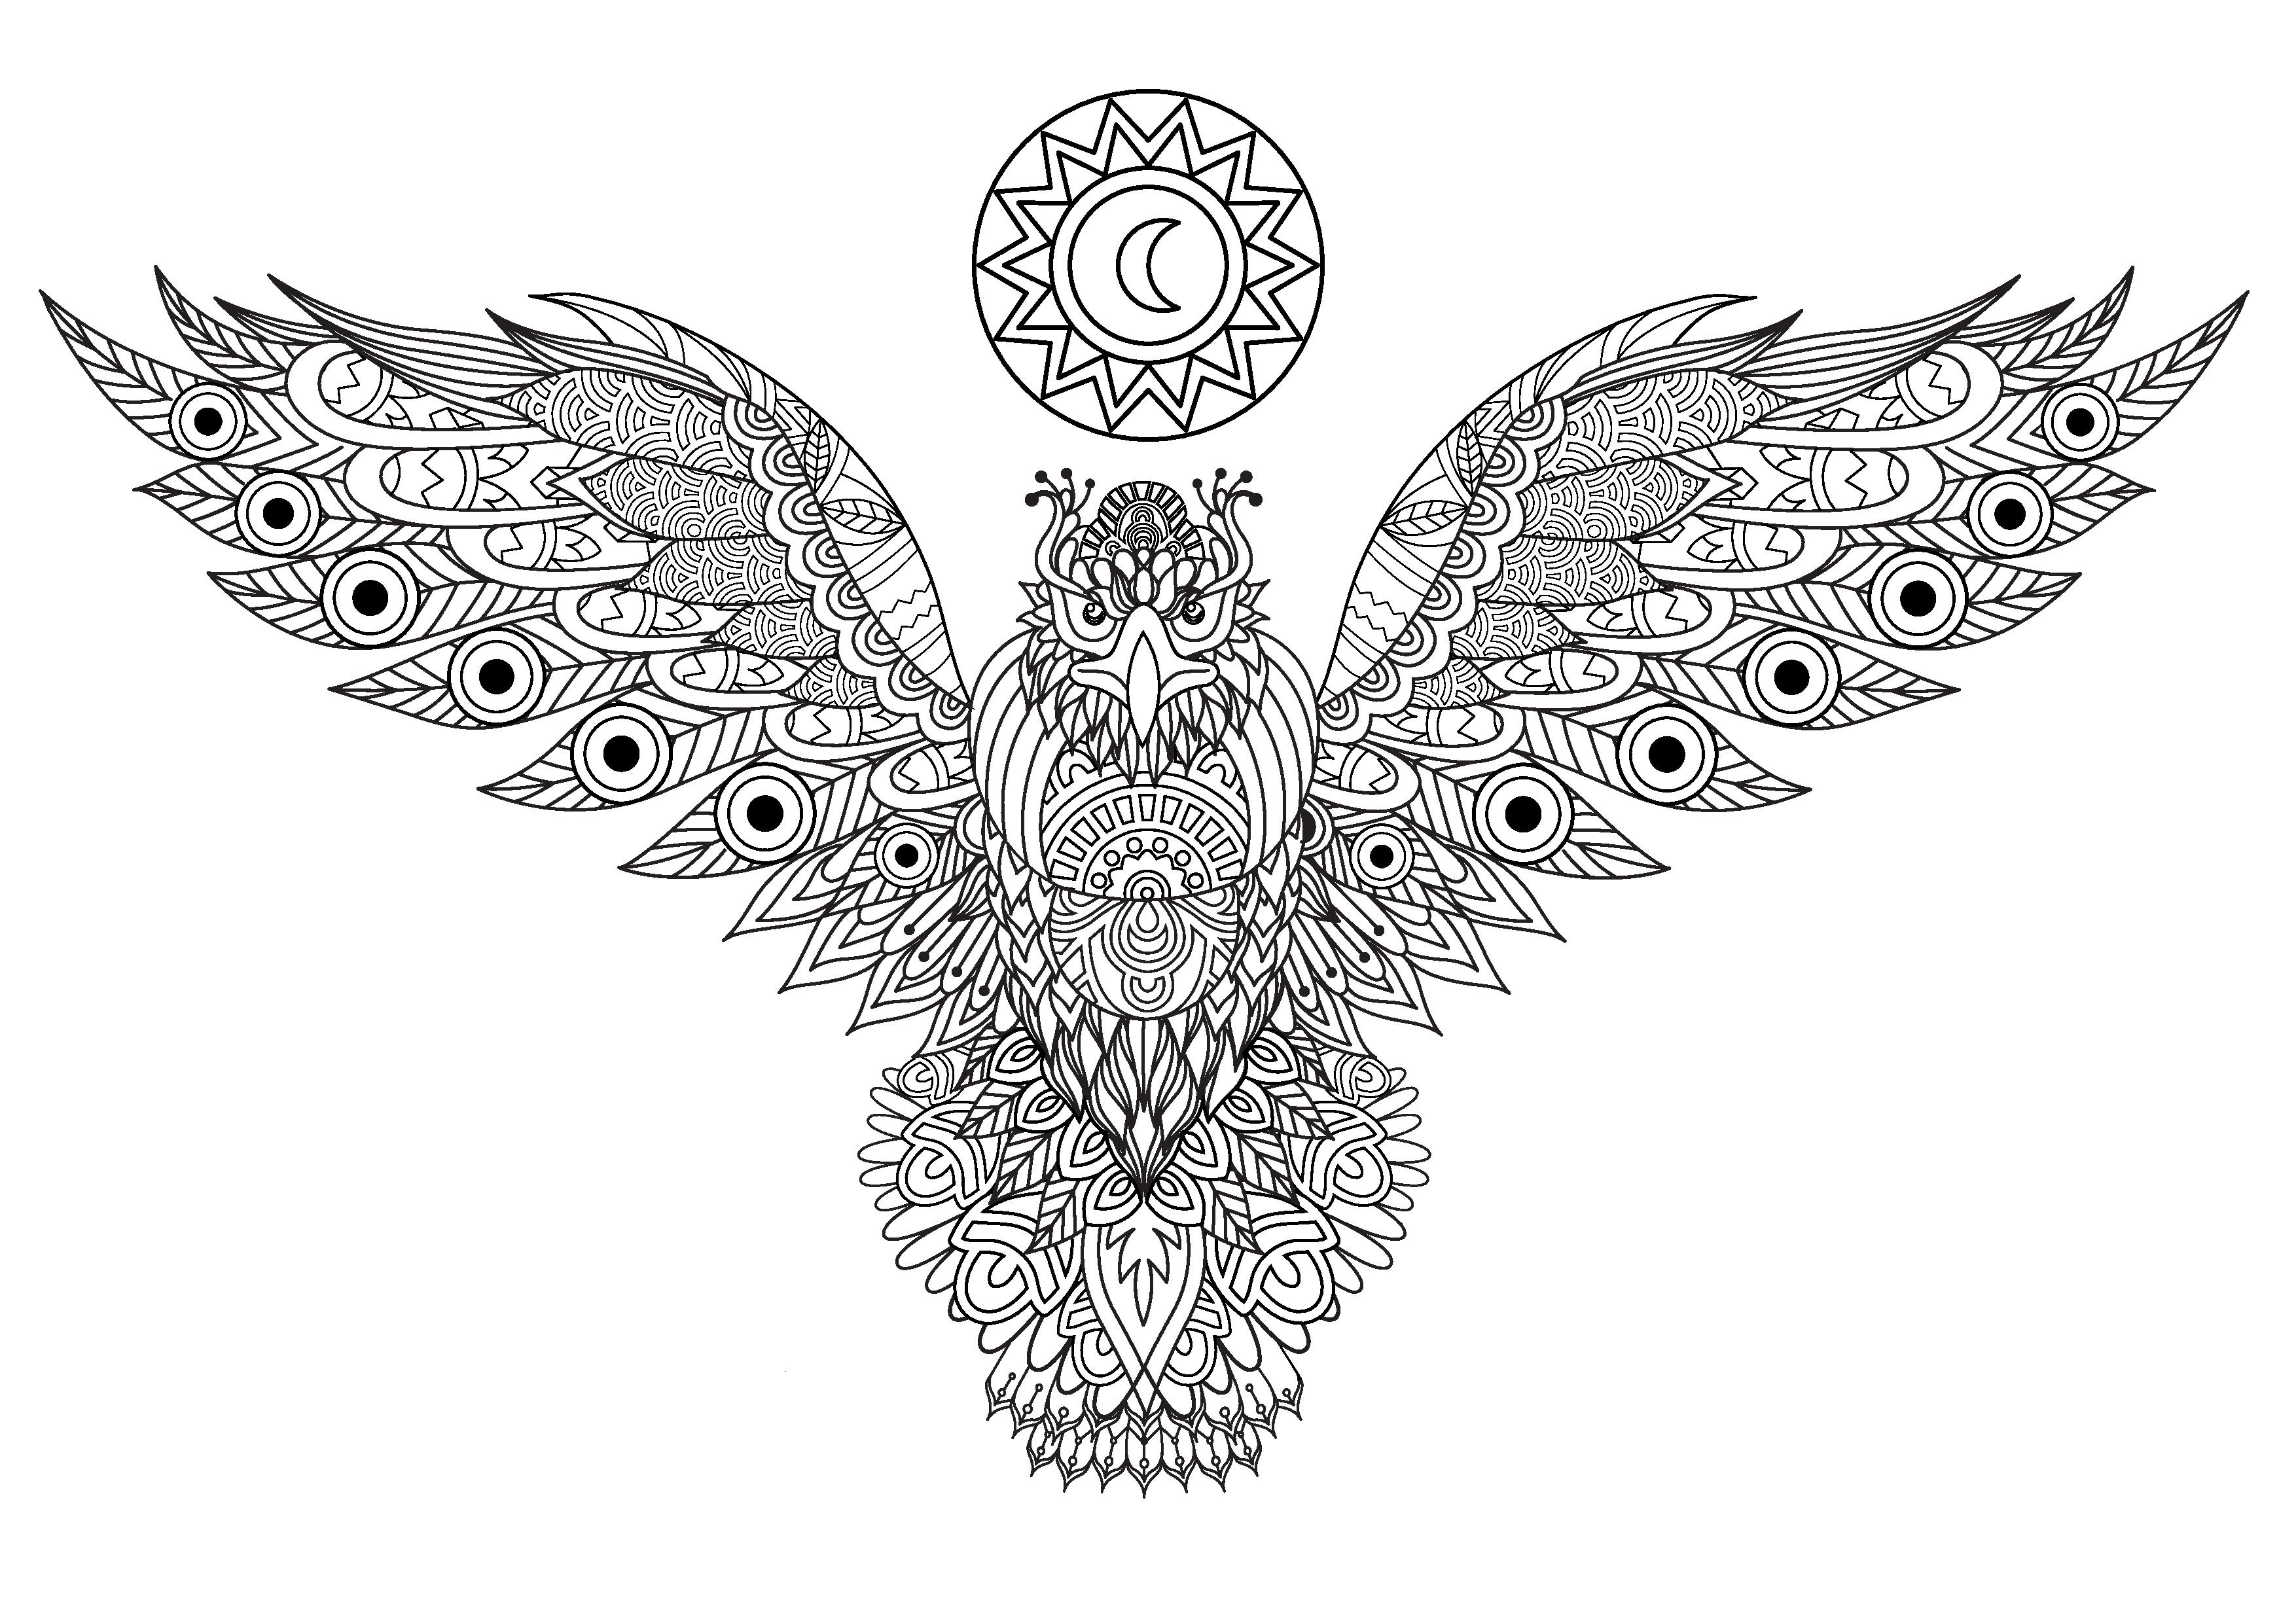 Maestosa aquila che dispiega le ali e presenta molti disegni diversi e intricati, Artista : Flora